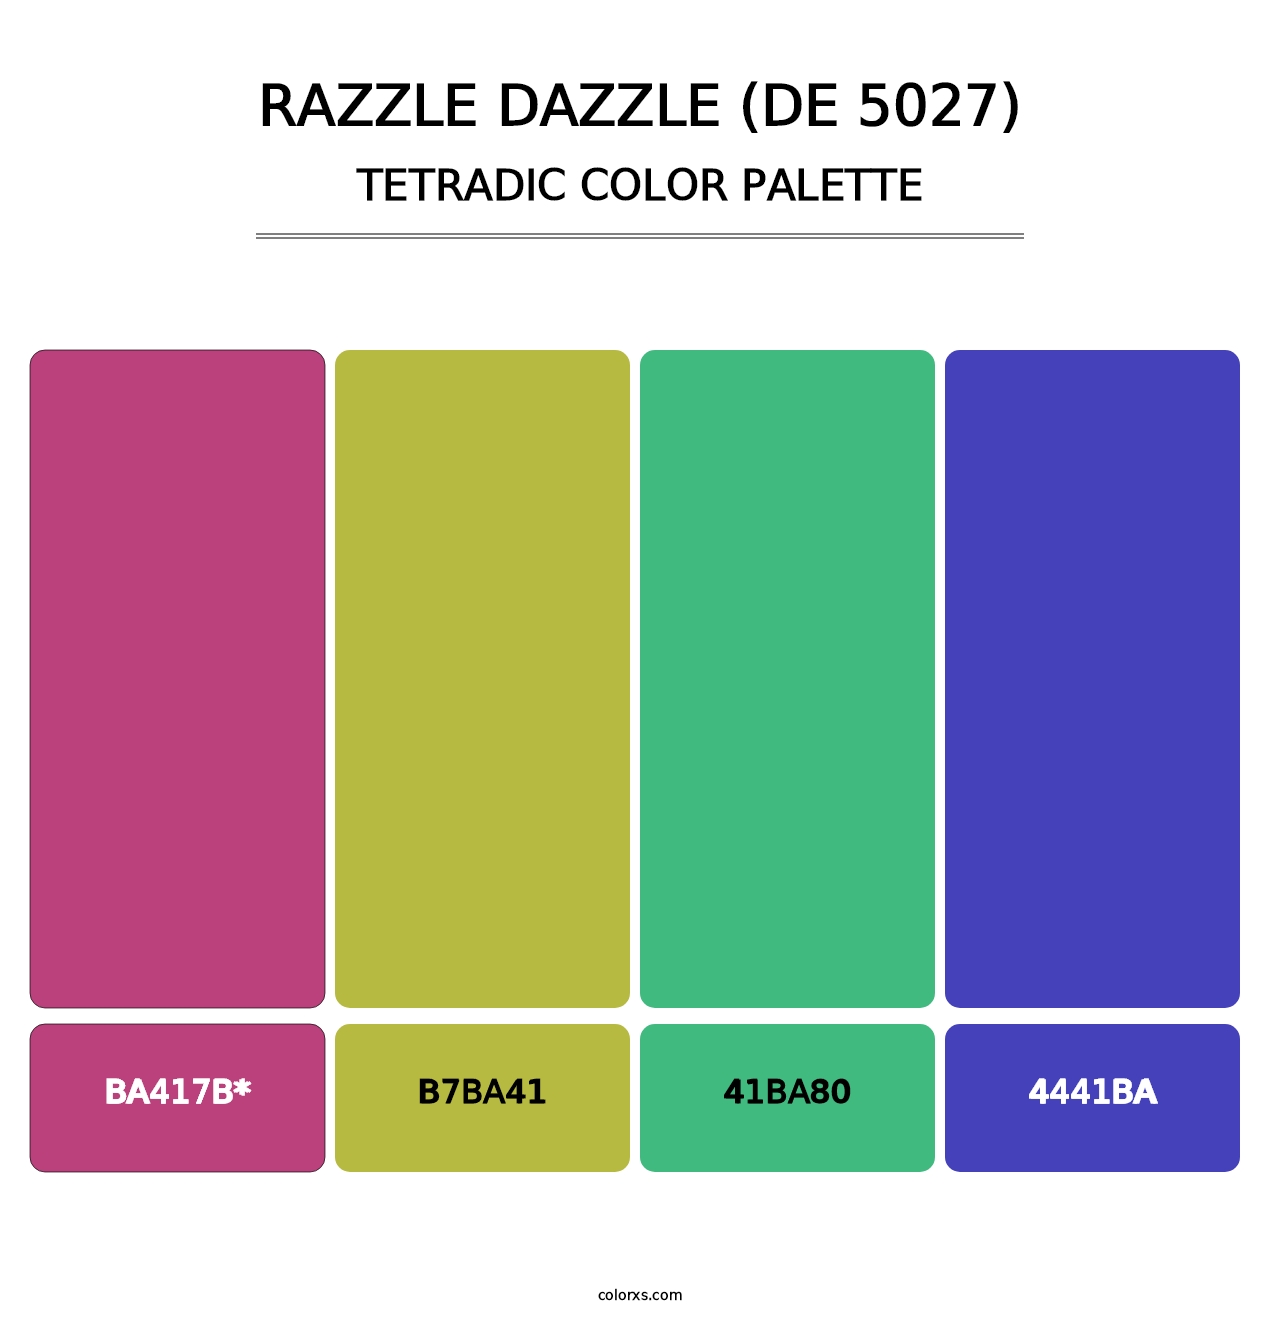 Razzle Dazzle (DE 5027) - Tetradic Color Palette